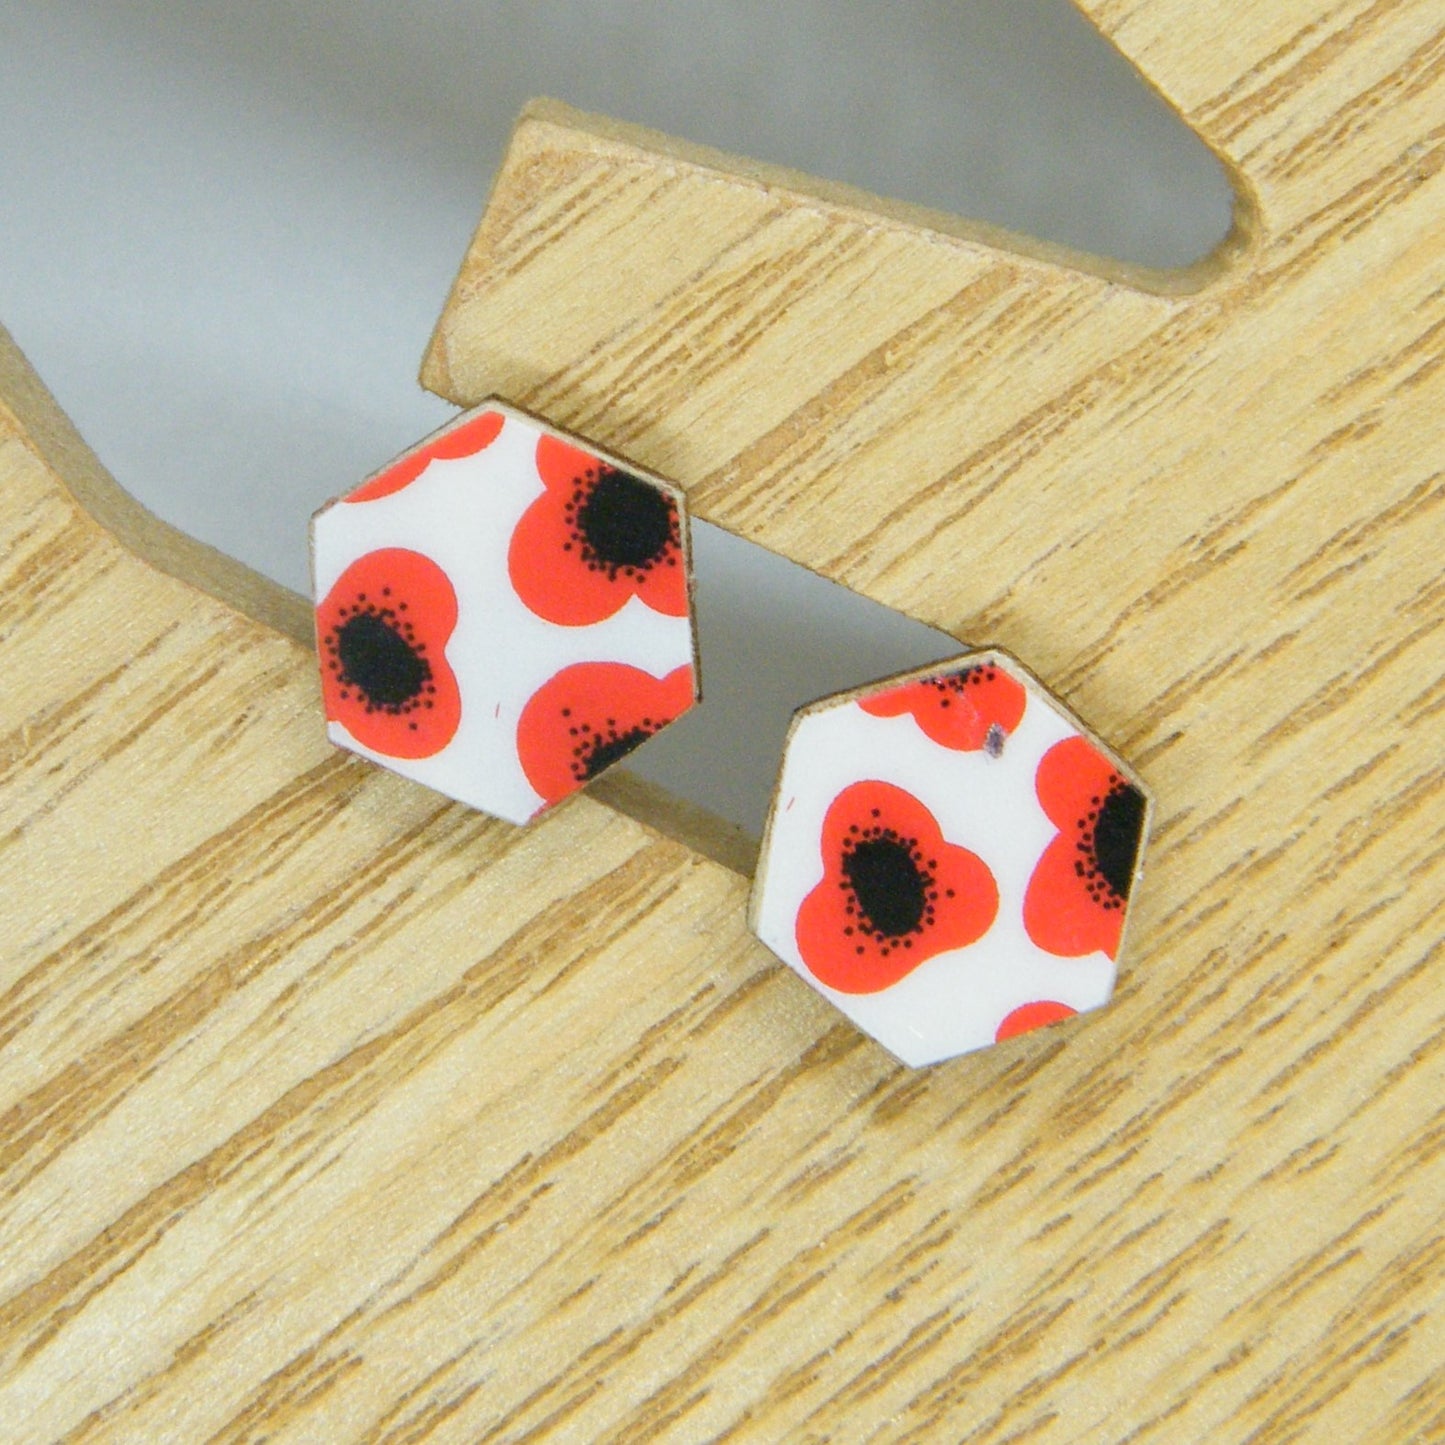 Red Poppy stud earrings